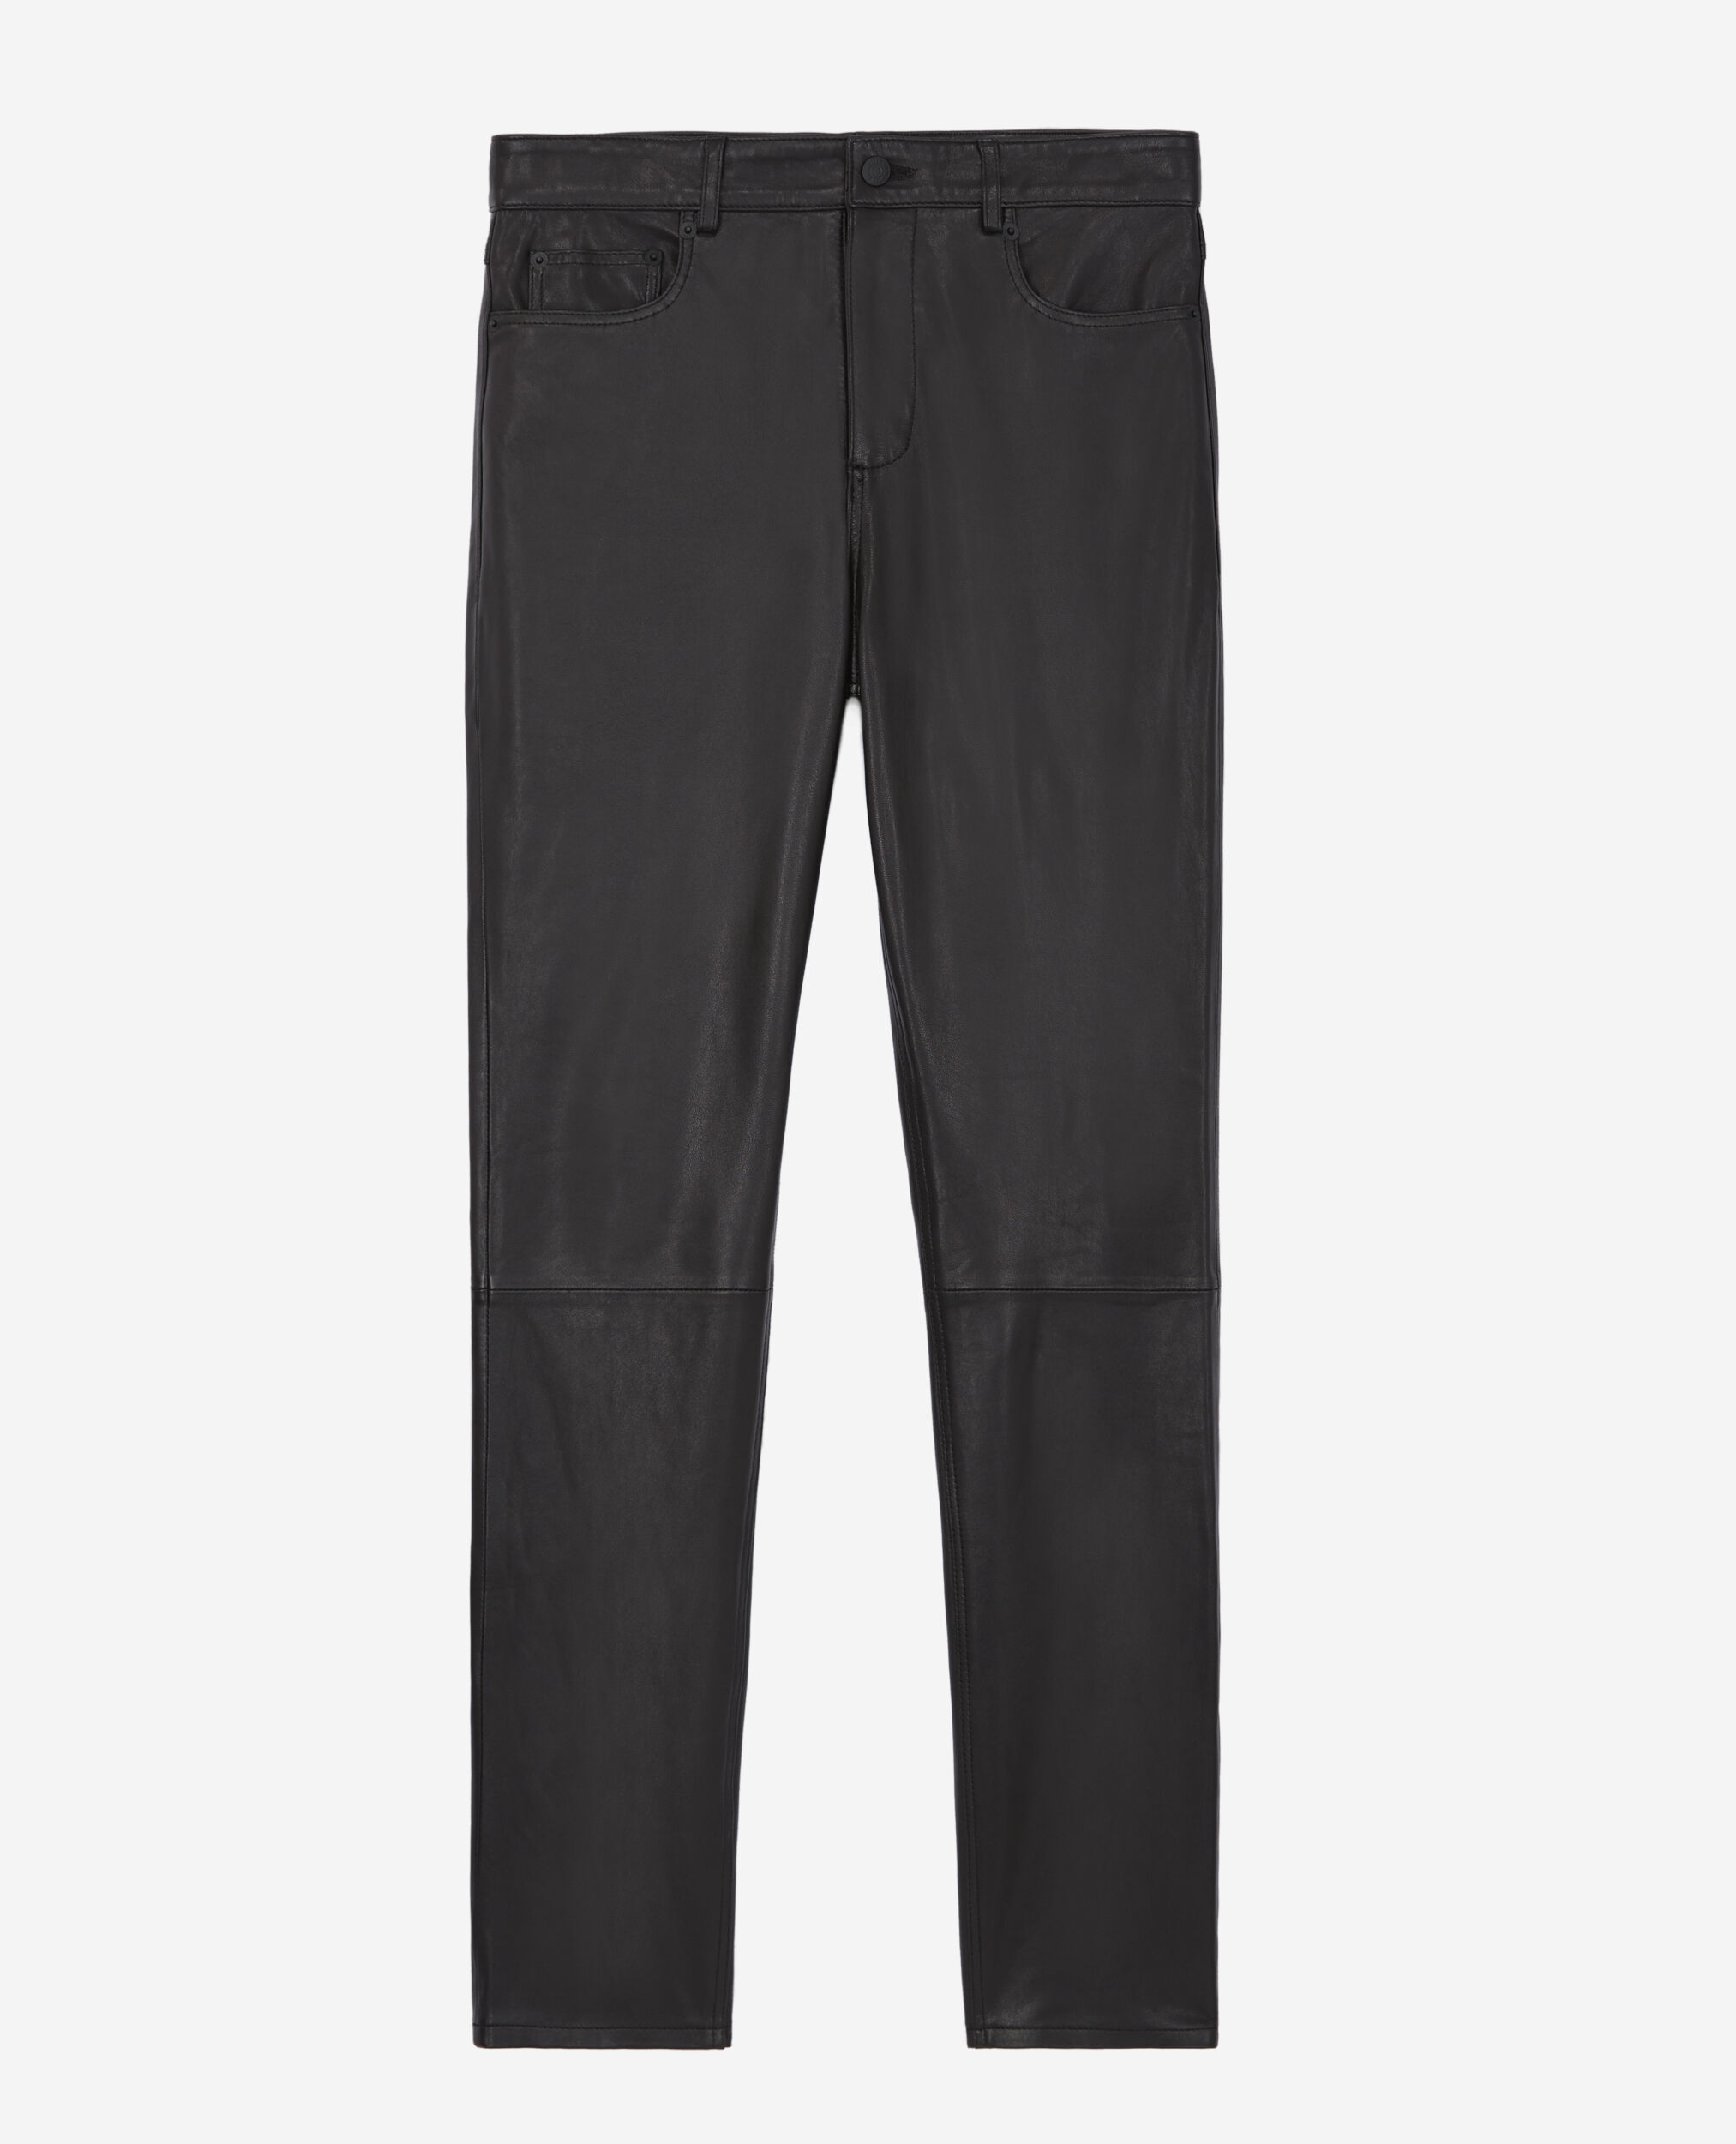 Pantalon slim en cuir noir, BLACK, hi-res image number null